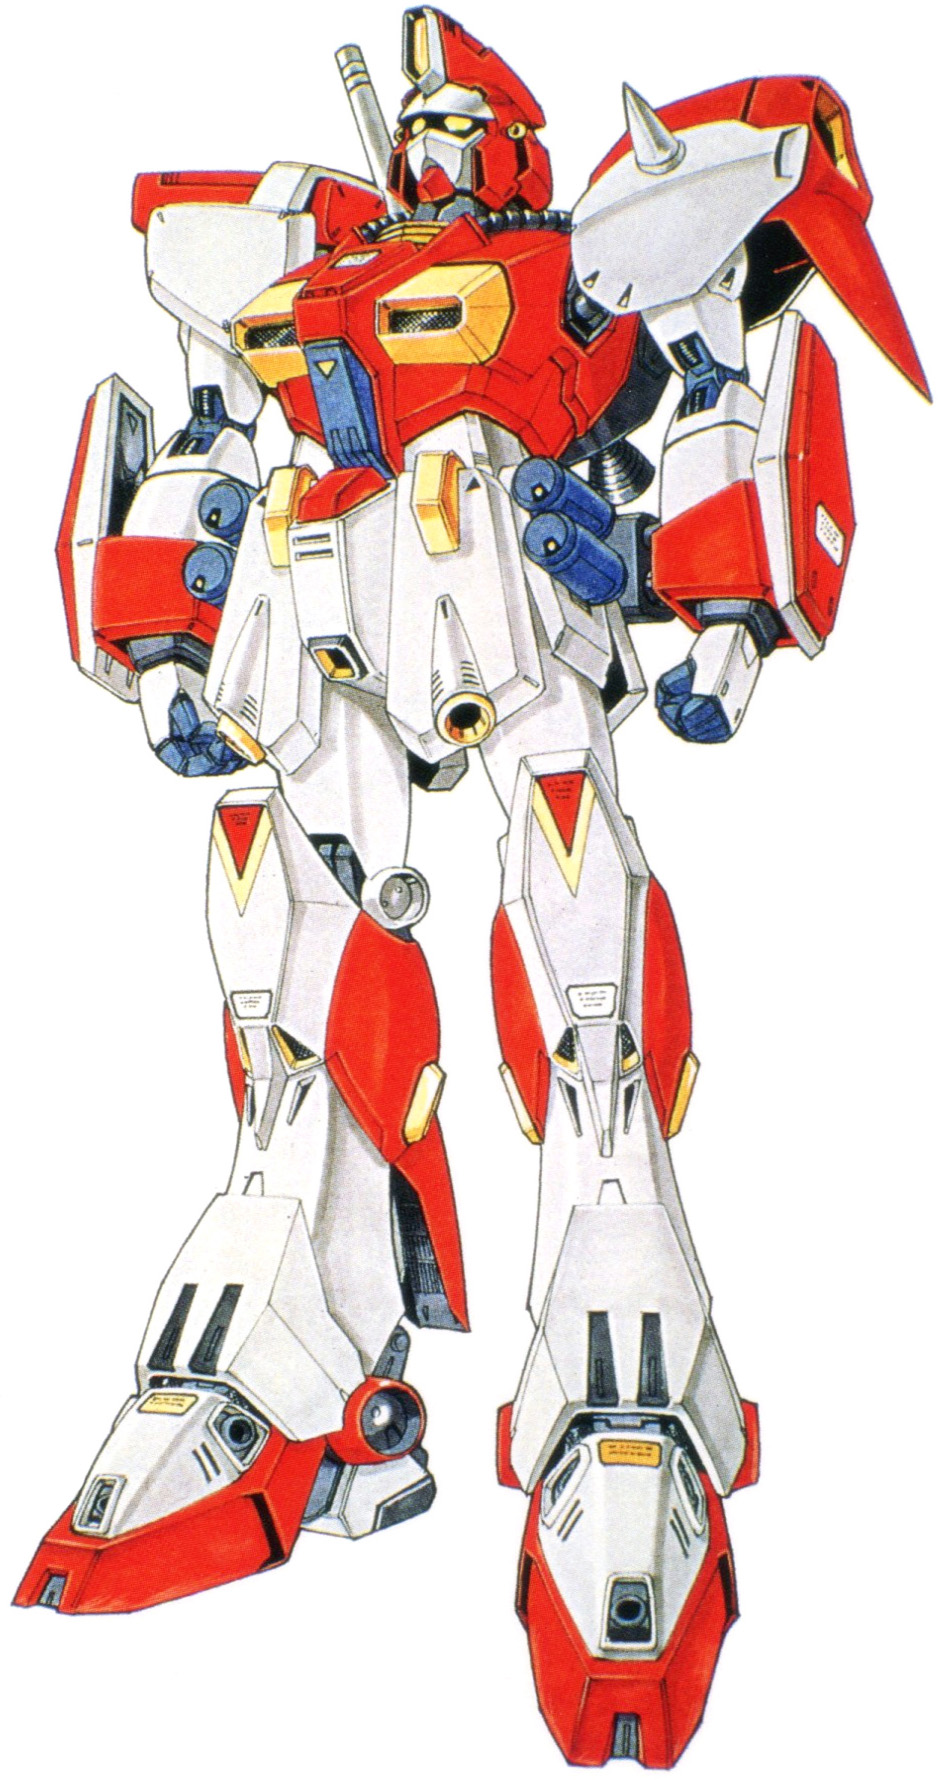 Oms 90r Gundam F90 The Gundam Wiki Fandom